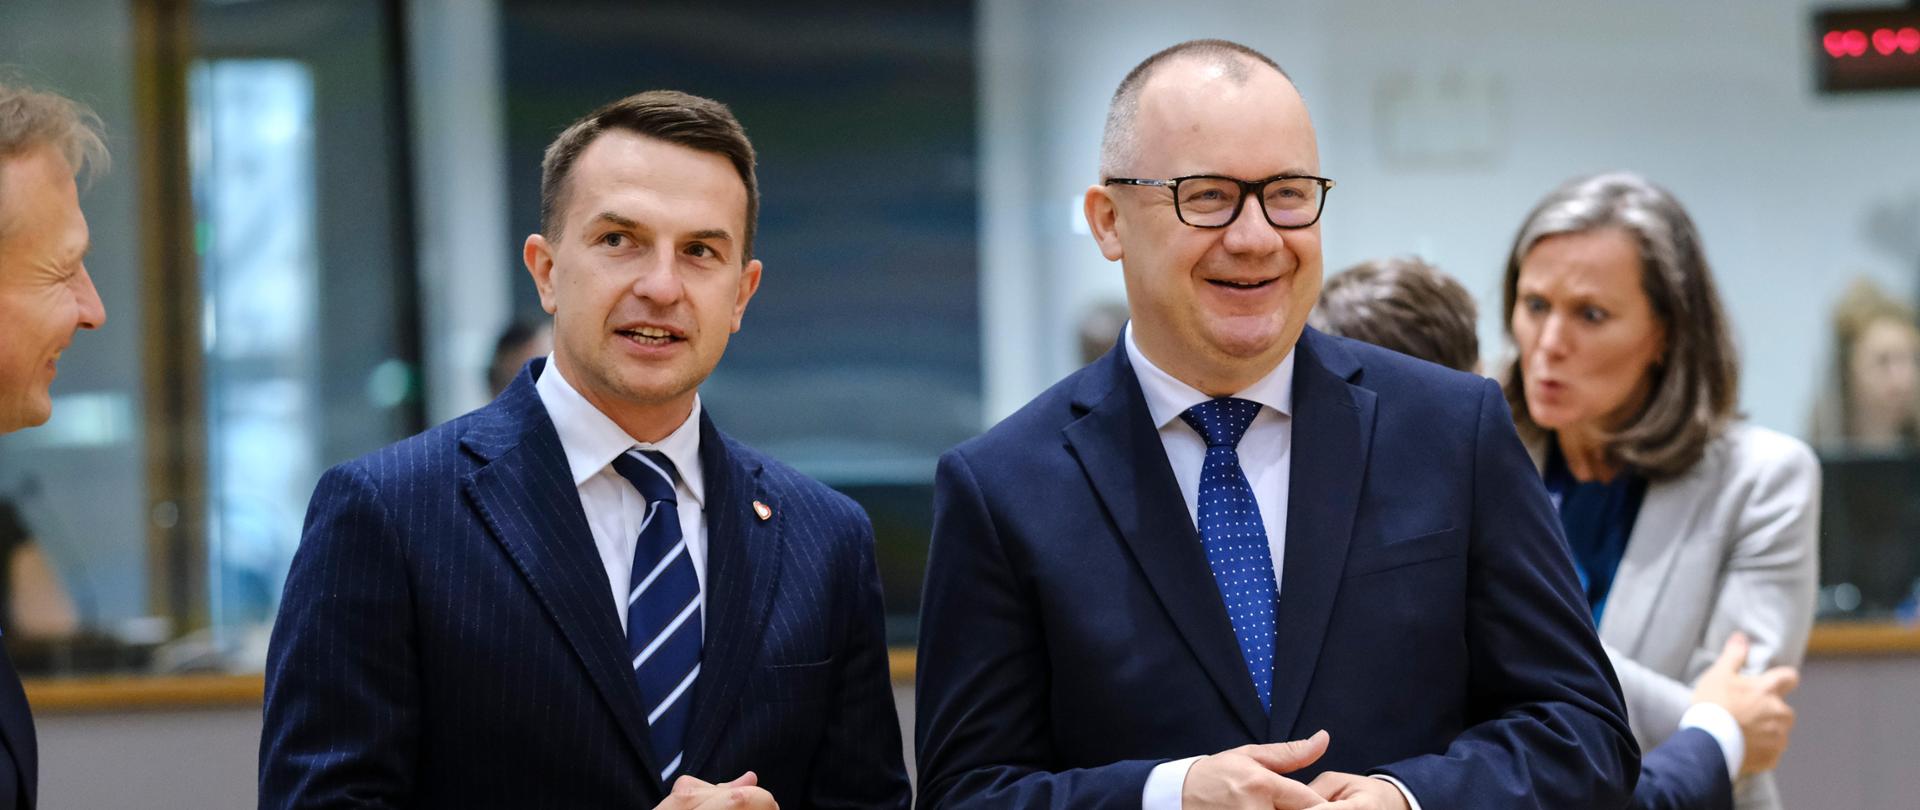 Minister Adam Szłapka i minister Adam Bodnar, fot. newsroom.consilium.europa.eu.